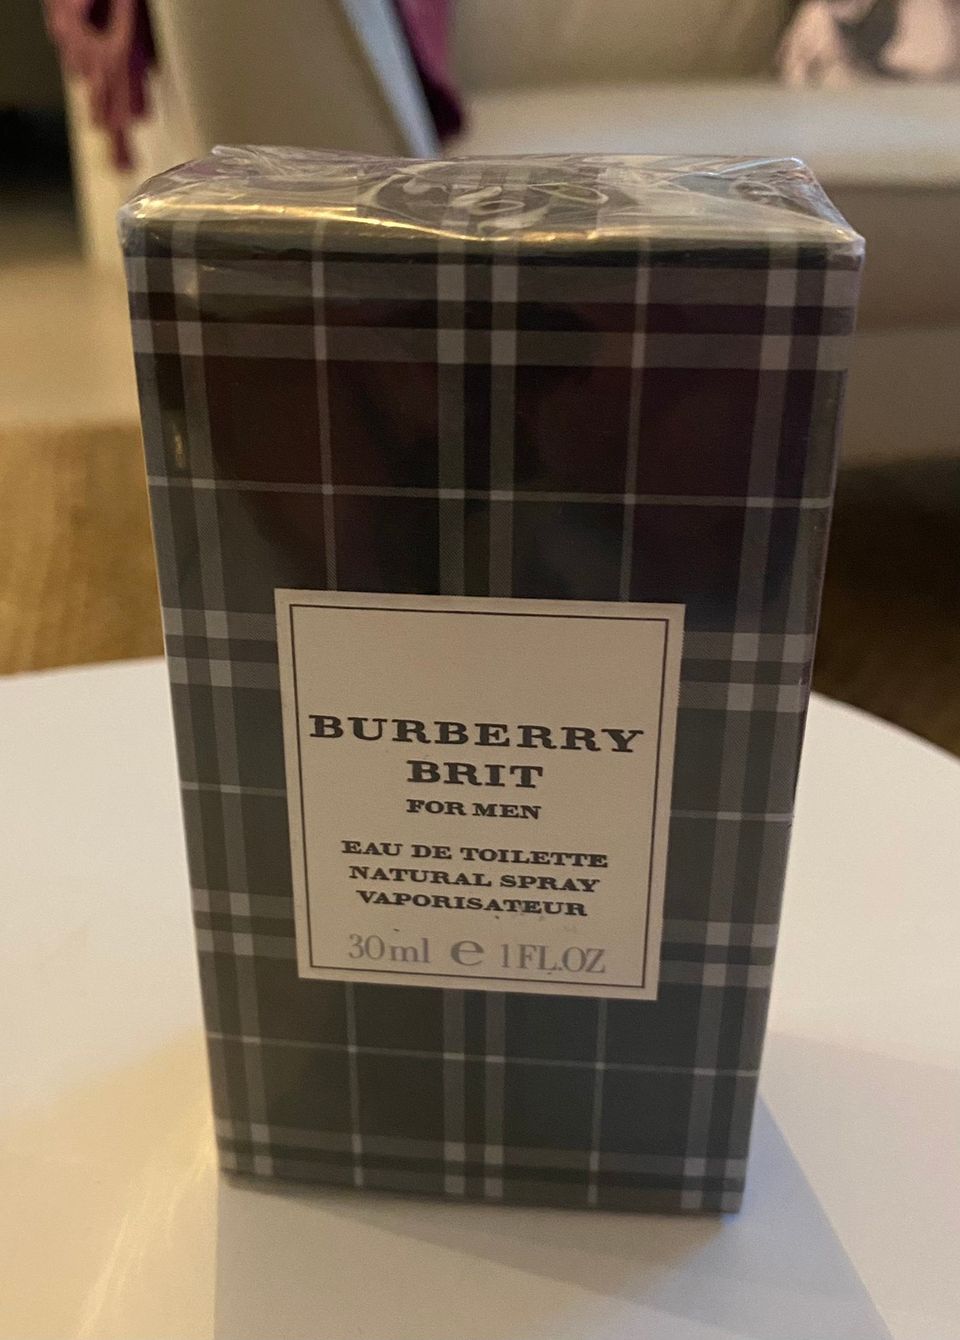 Burberry Brit eau de toilette for men